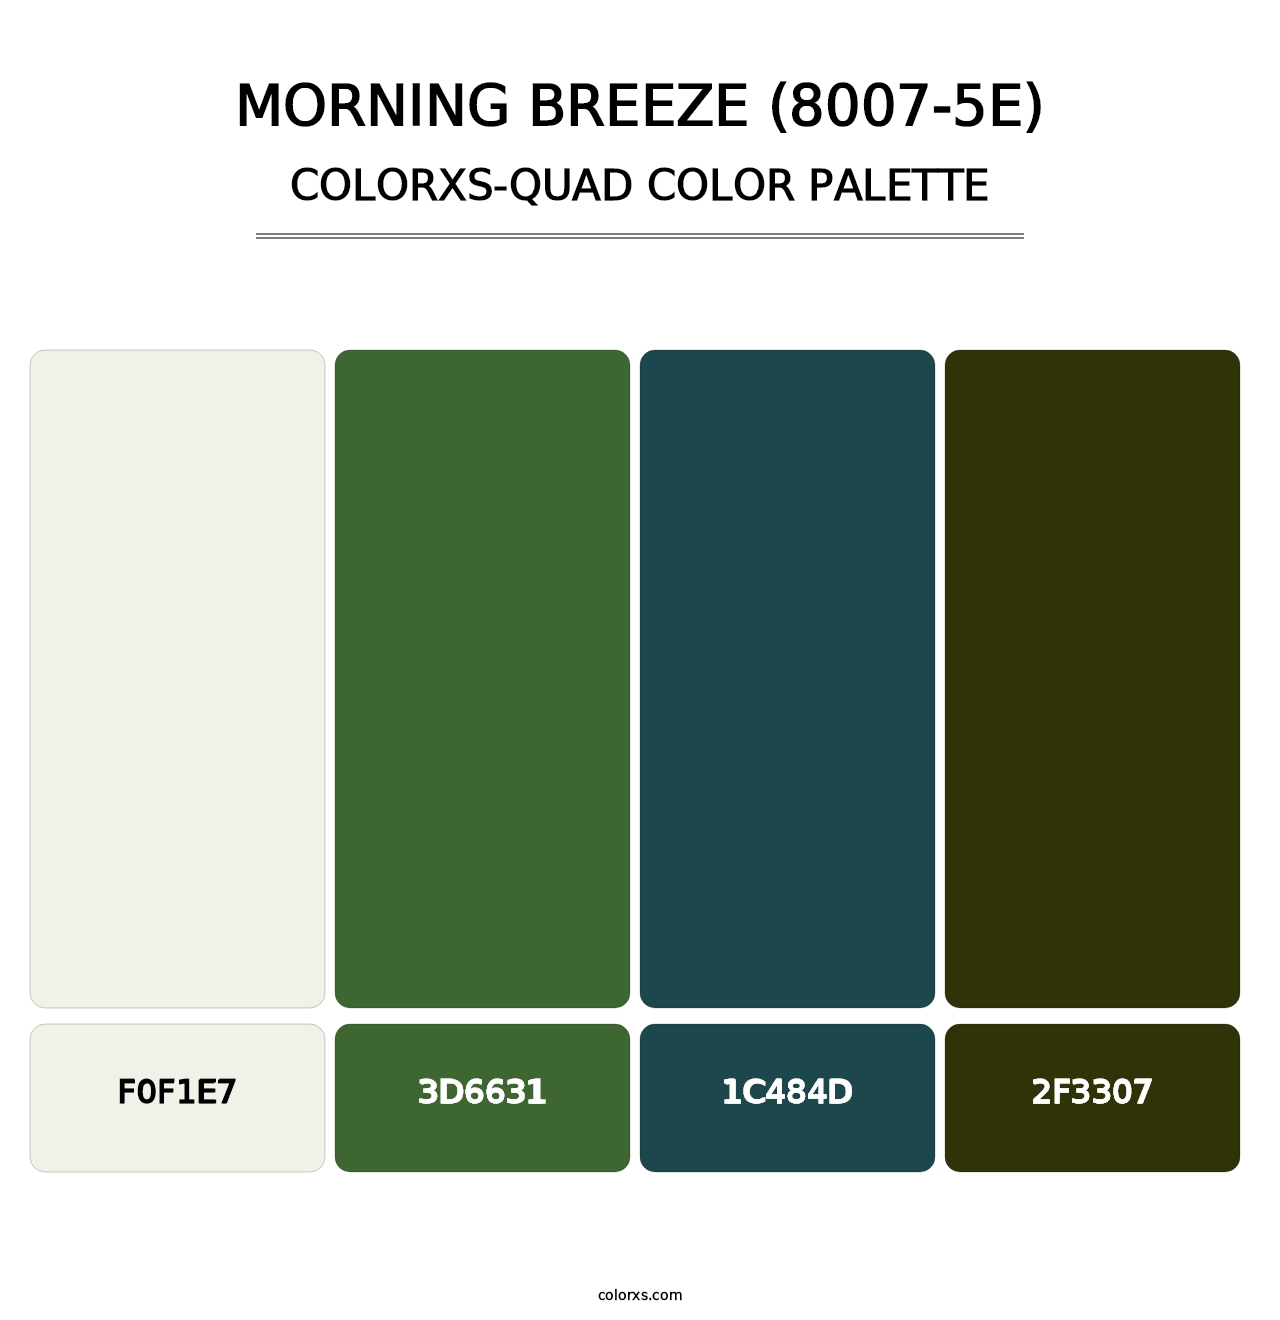 Morning Breeze (8007-5E) - Colorxs Quad Palette